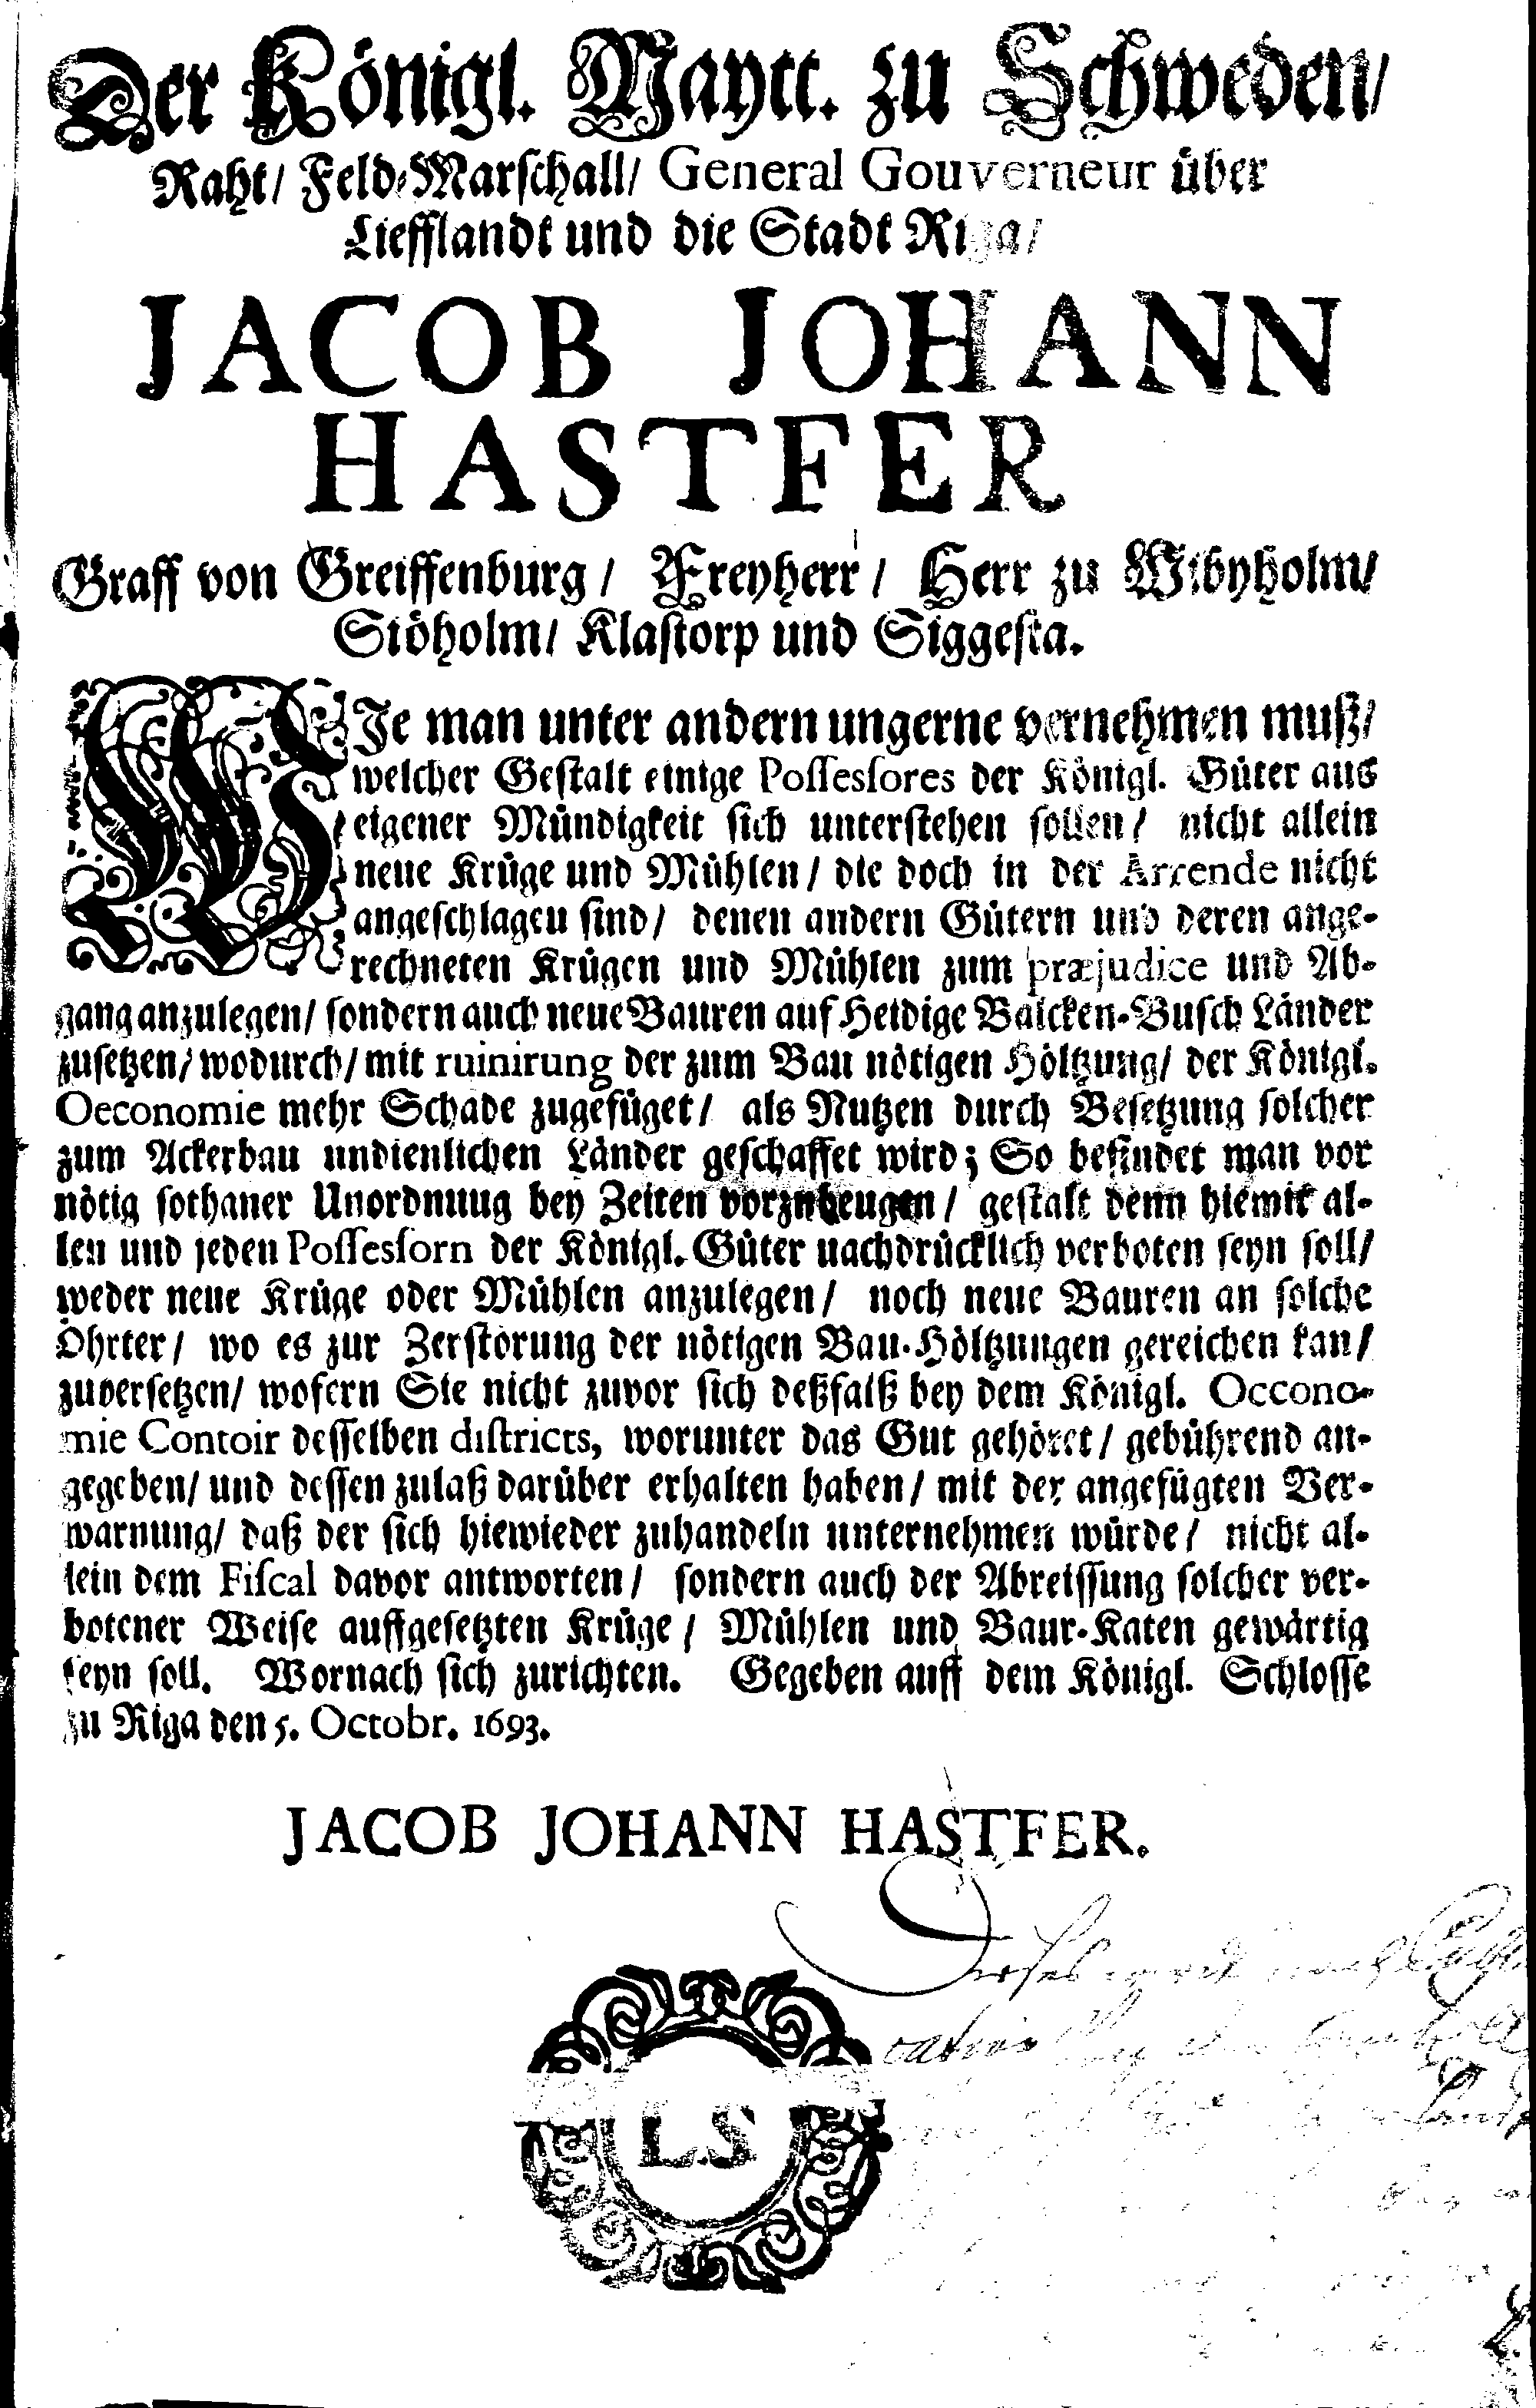 [Jacob Johan Hastferi korraldus]